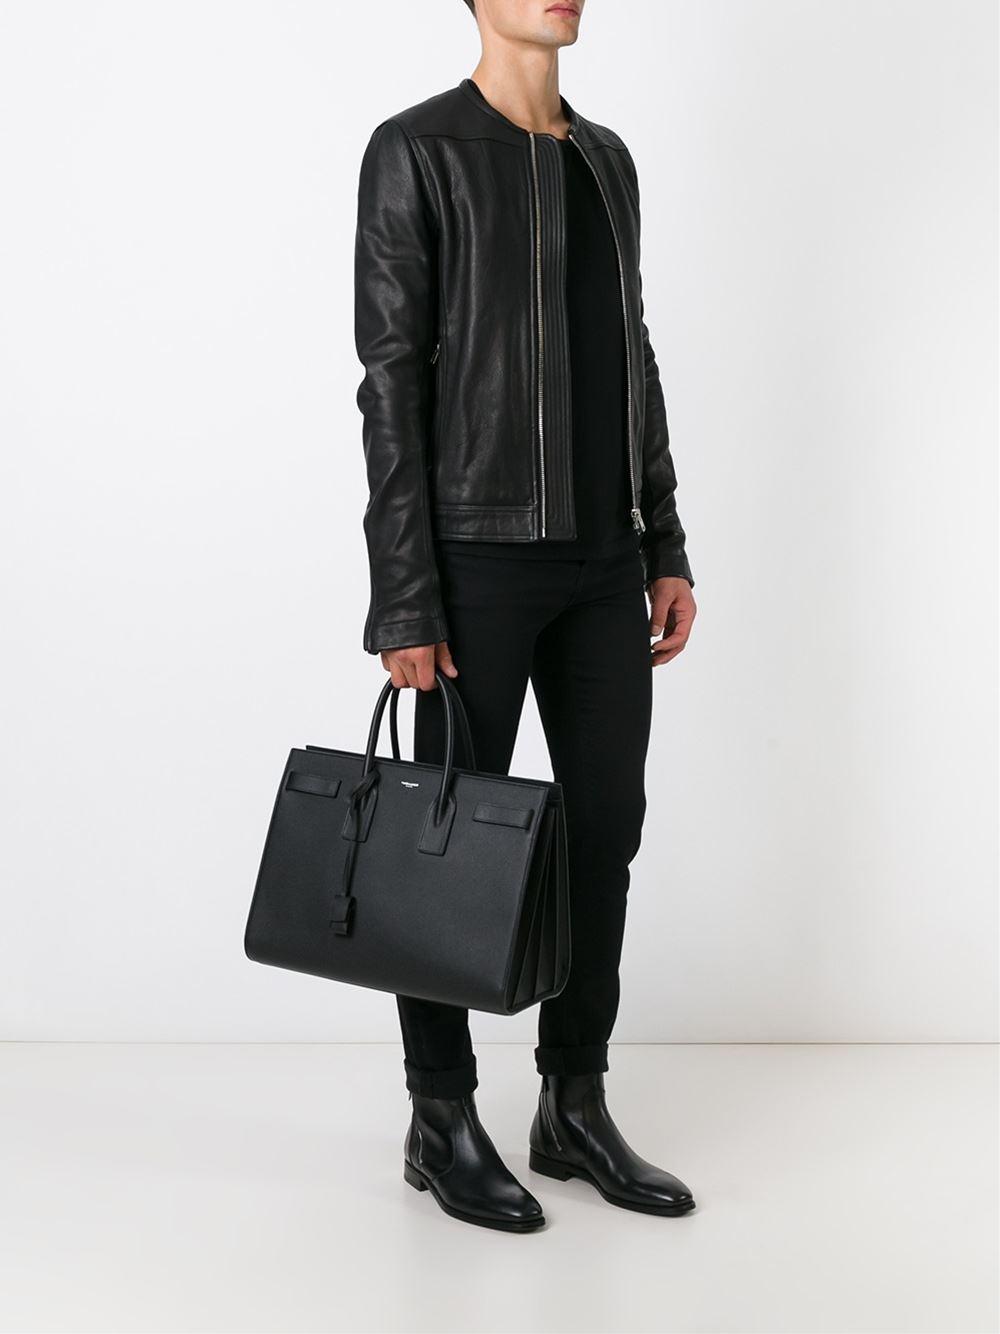 Saint Laurent Sac de Jour Thin Large in Glazed Leather - Black - Men